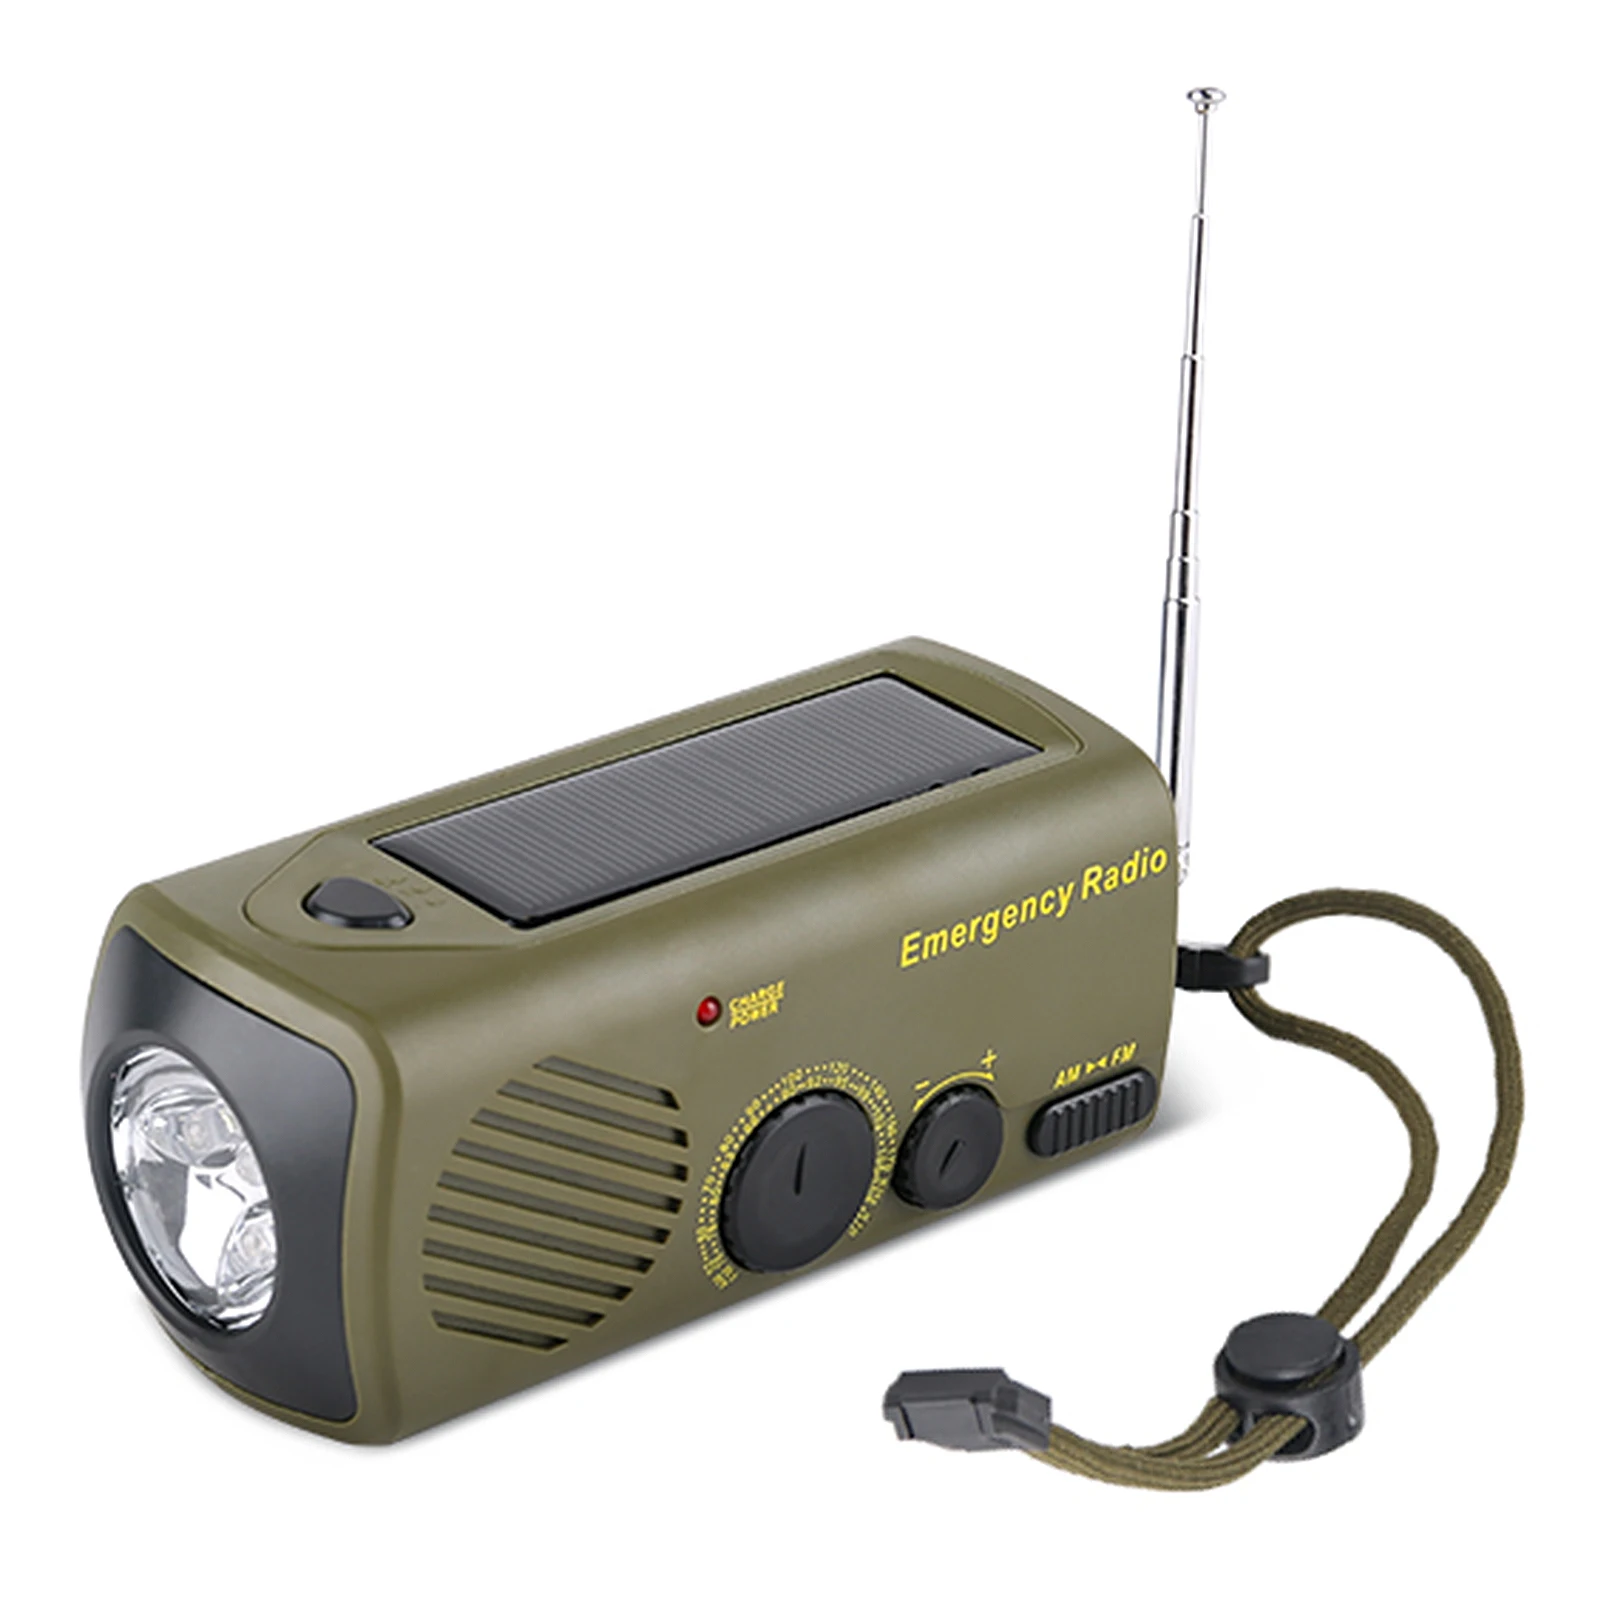 

Уличное аварийное радио, портативное зарядное устройство на солнечной батарее с ручным управлением, USB перезаряжаемое радио с фонариком, Аварийная сигнализация, зарядное устройство для сотового телефона